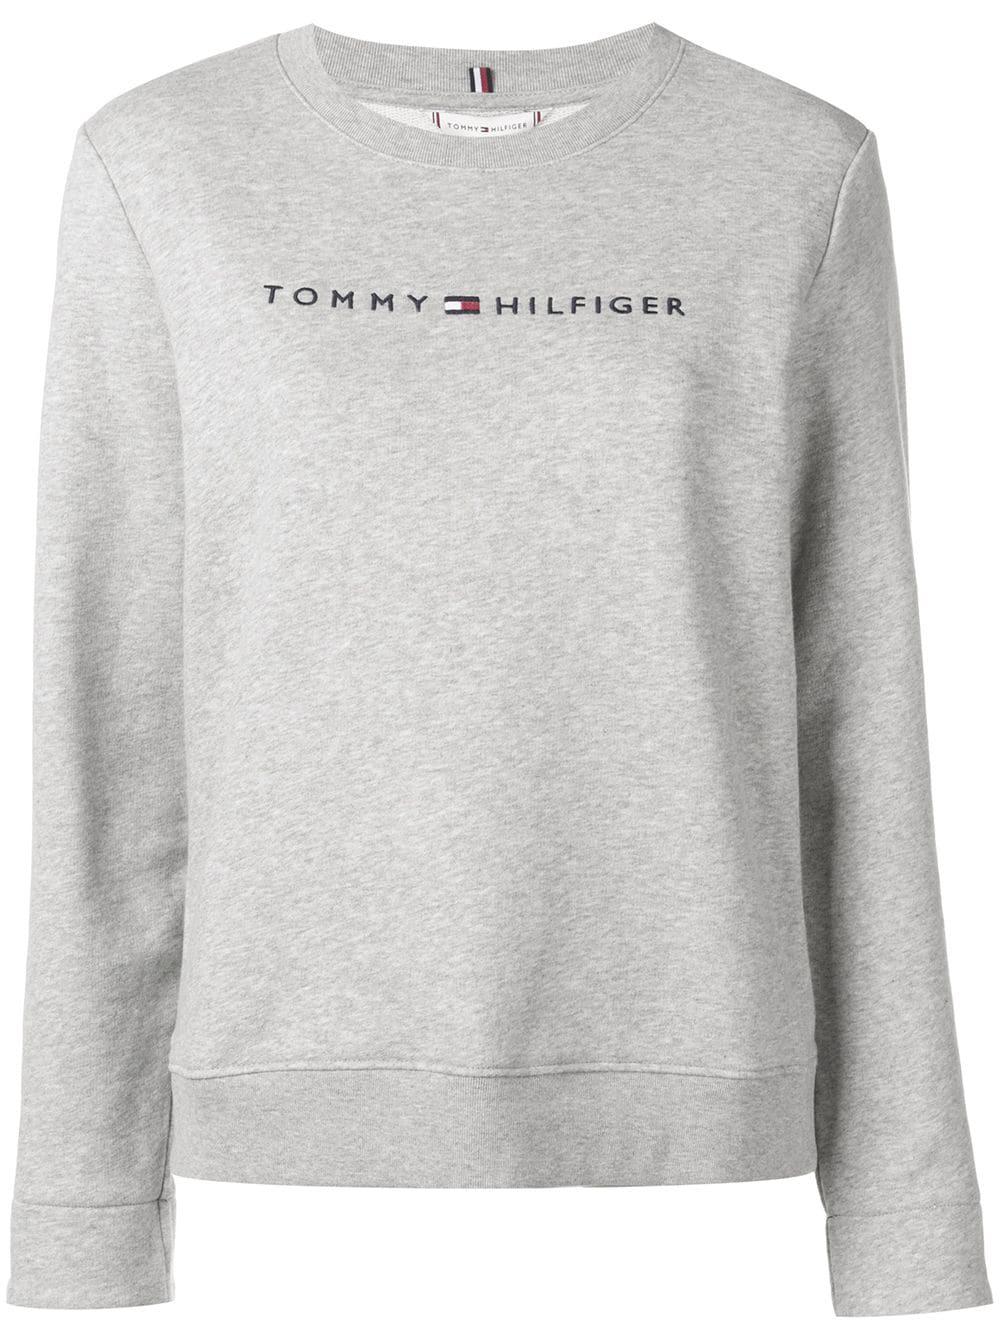 Tommy Hilfiger Crew Neck Sweatshirt - Grey | ModeSens